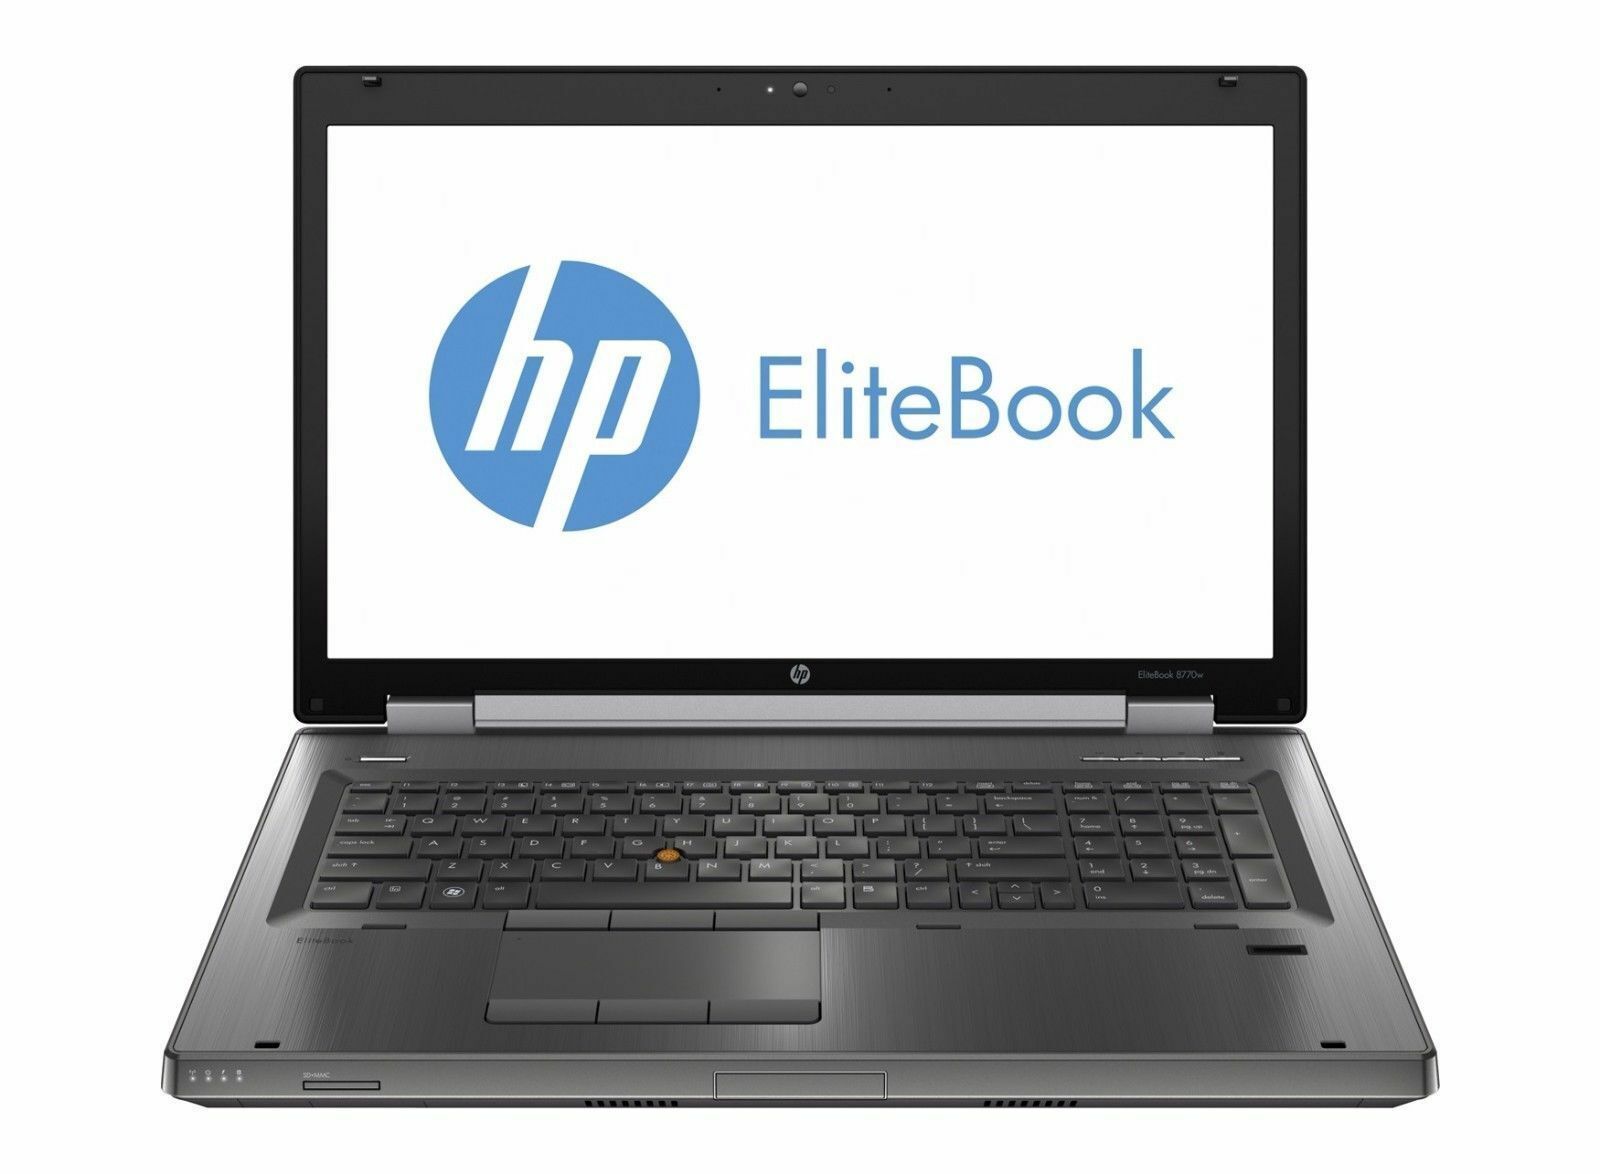 HP Elitebook 8770w Intel i7 3820QM 2.7Ghz 32GB 750GB 1GB ATI 17.3" Full HD NO OS Image 1